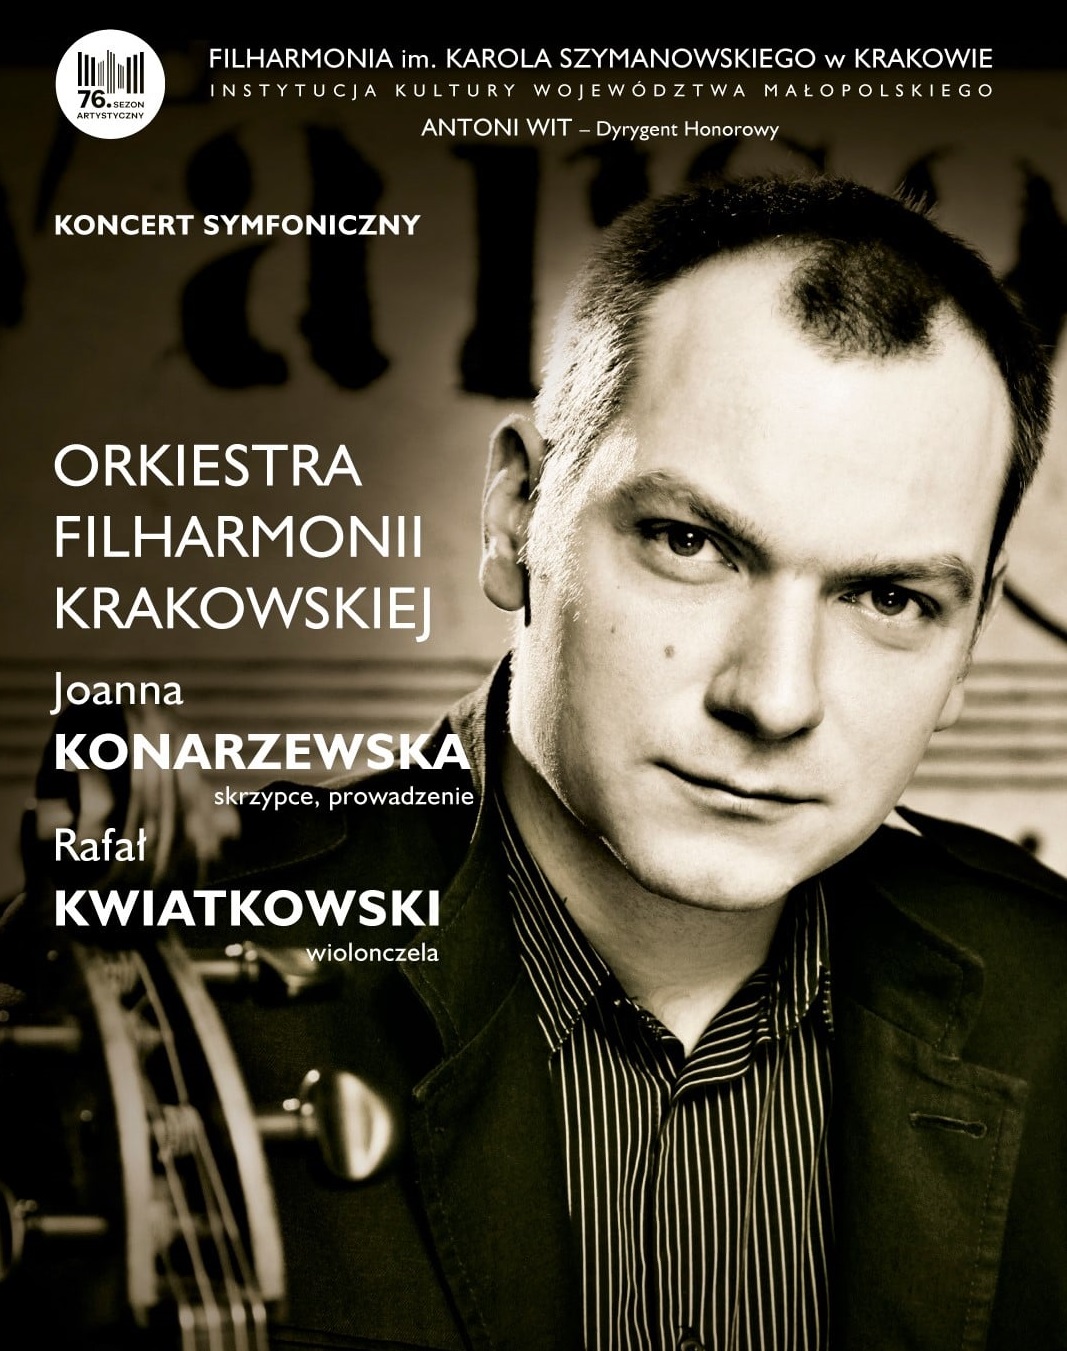 Grafika promująca wydarzenie w Filharmonii Krakowskiej.